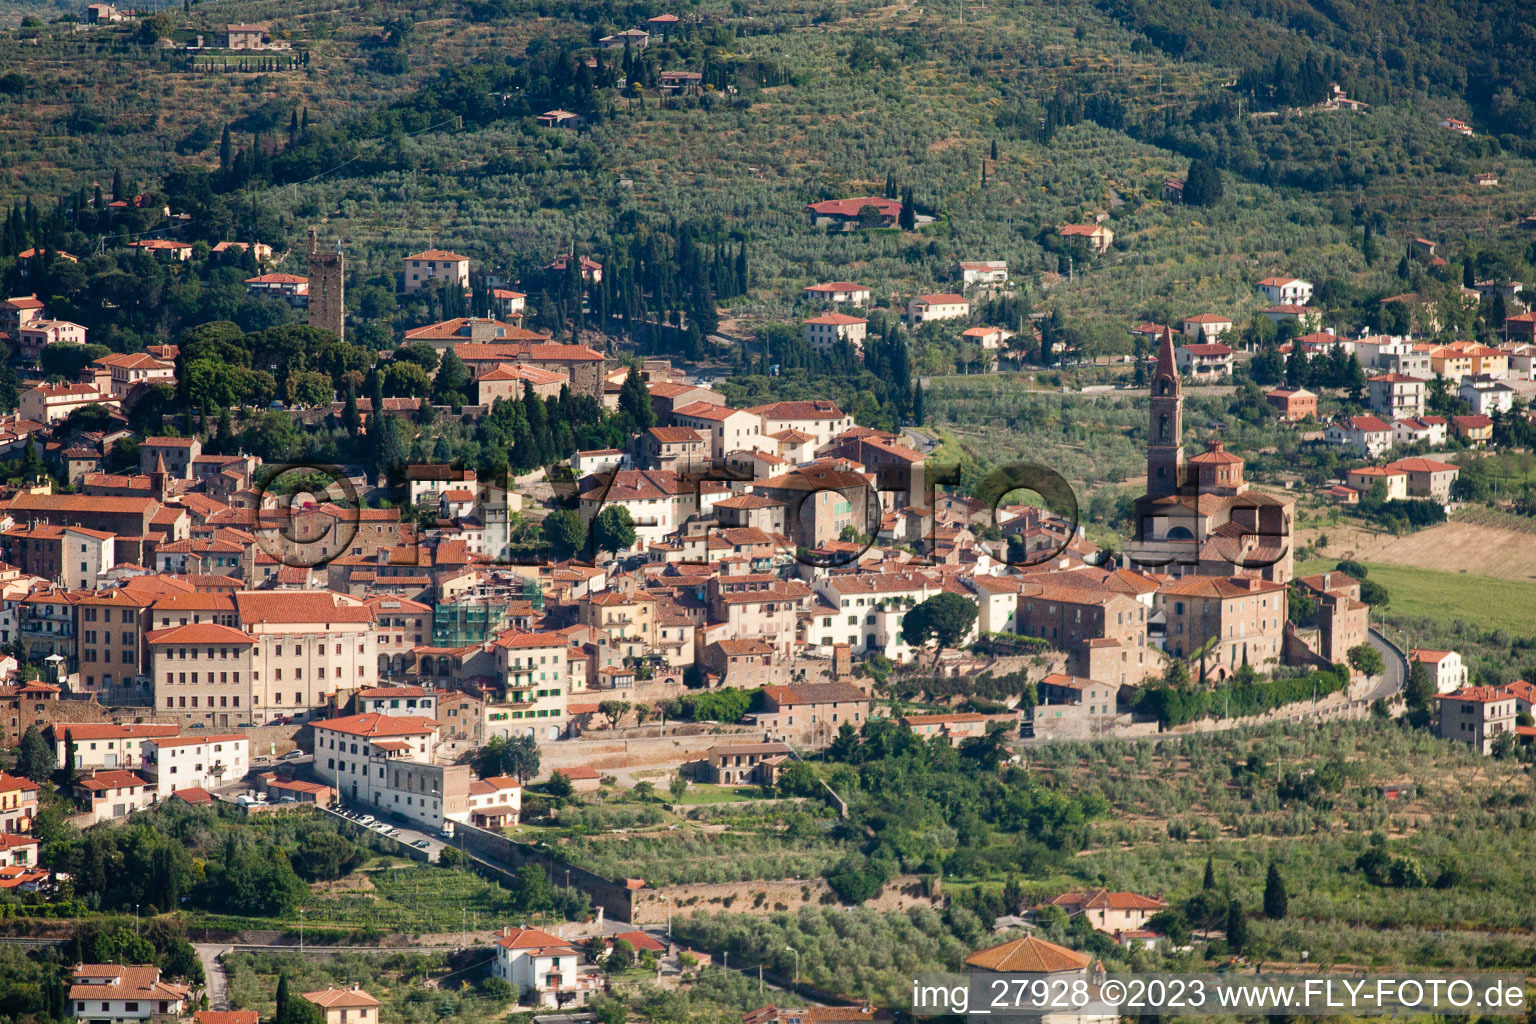 Luftbild von Castiglion Fiorentino (Toscana), Italien